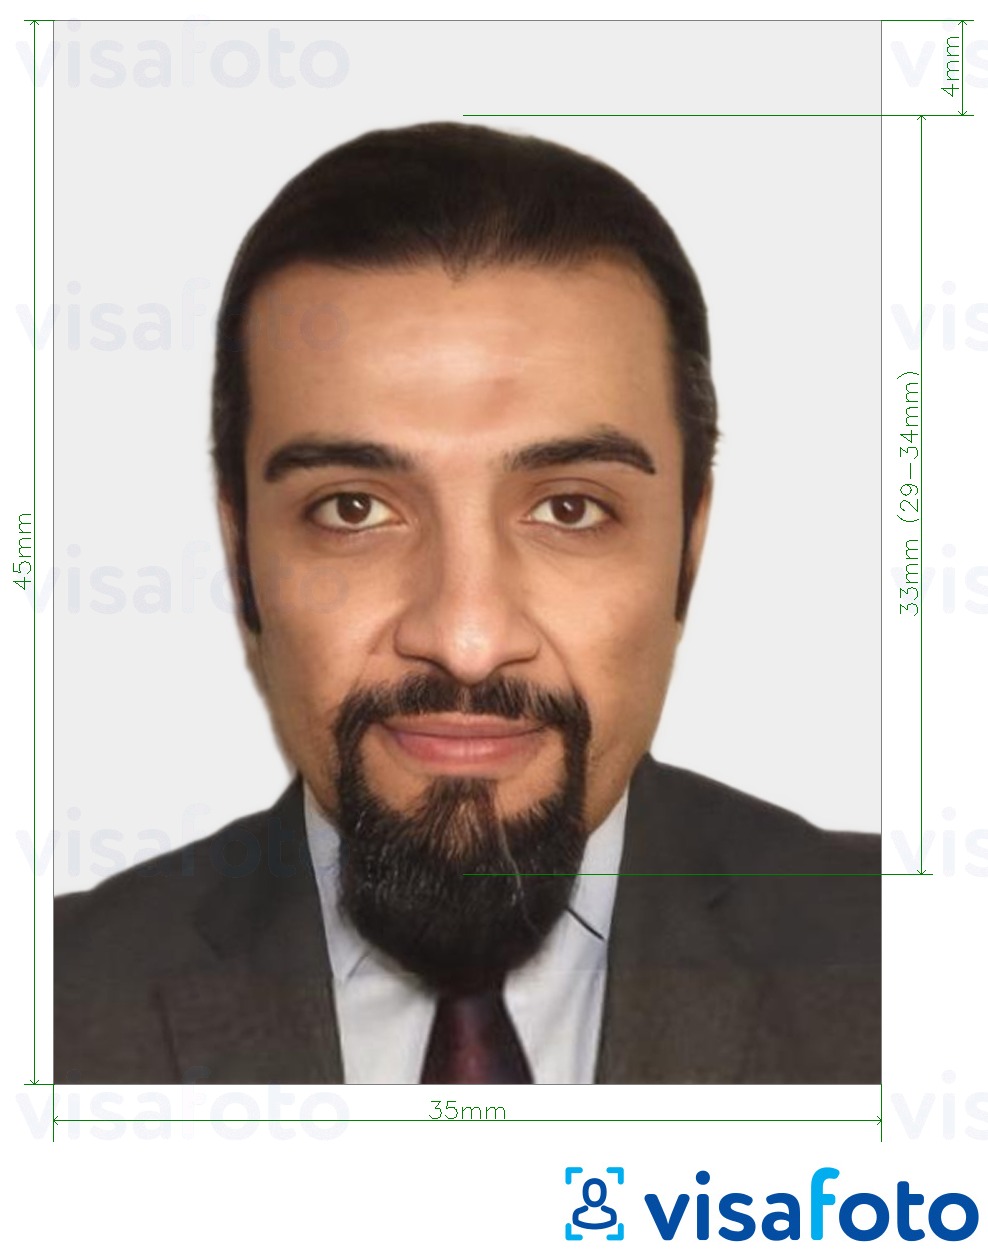 Fotobeispiel für Marokko National ID Card 35x45 mm (3,5x4,5 cm) mit genauer größenangabe